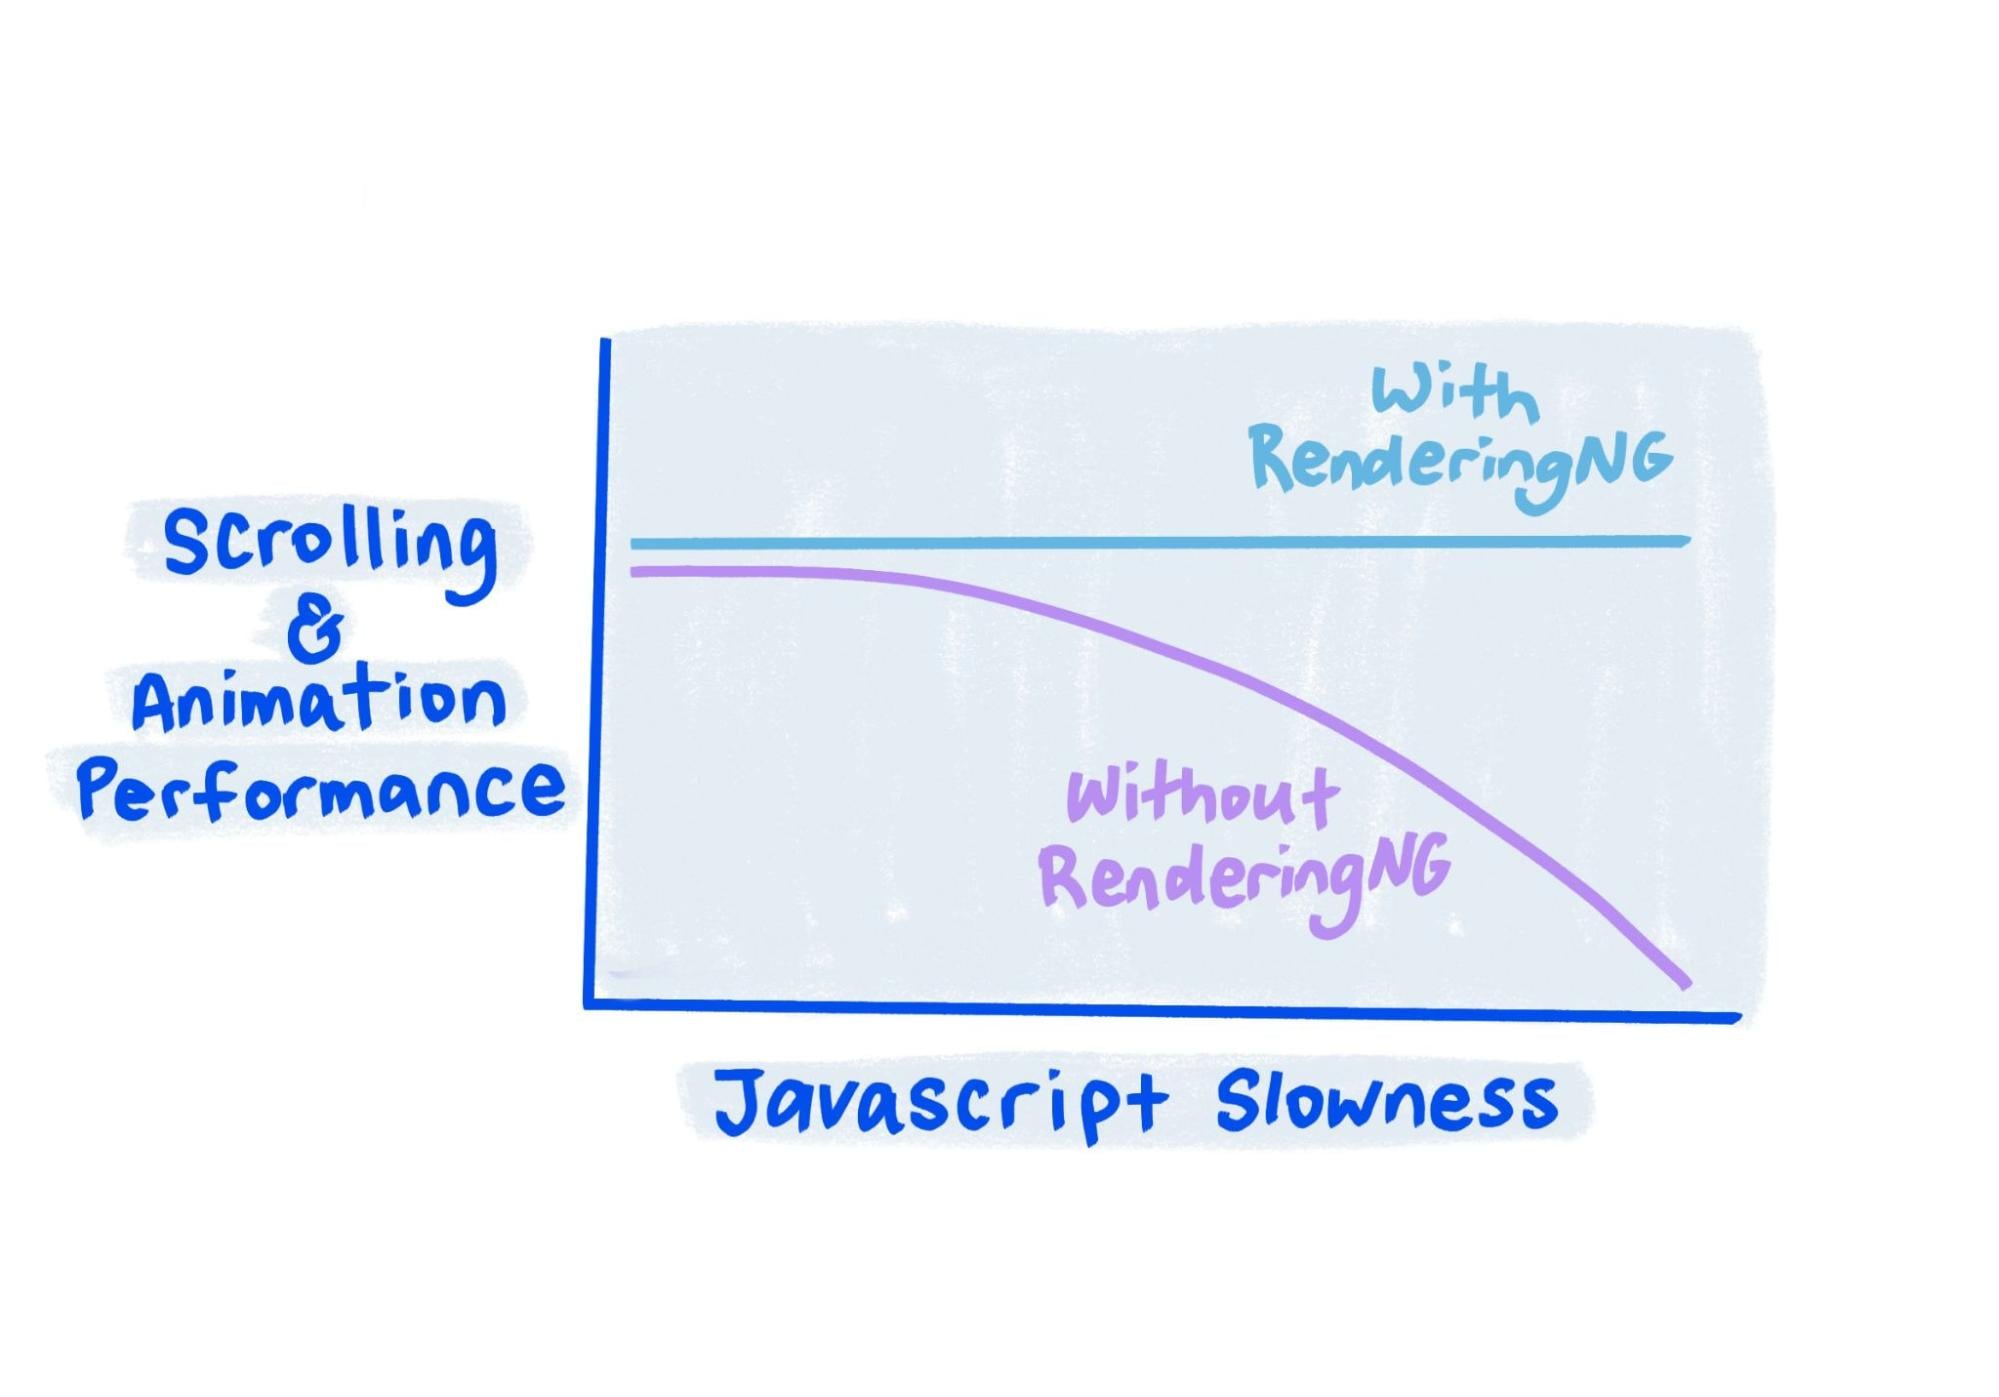 O esboço mostra que, com a RenderizaçãoNG, a performance permanece sólida mesmo quando o JavaScript está muito lento.